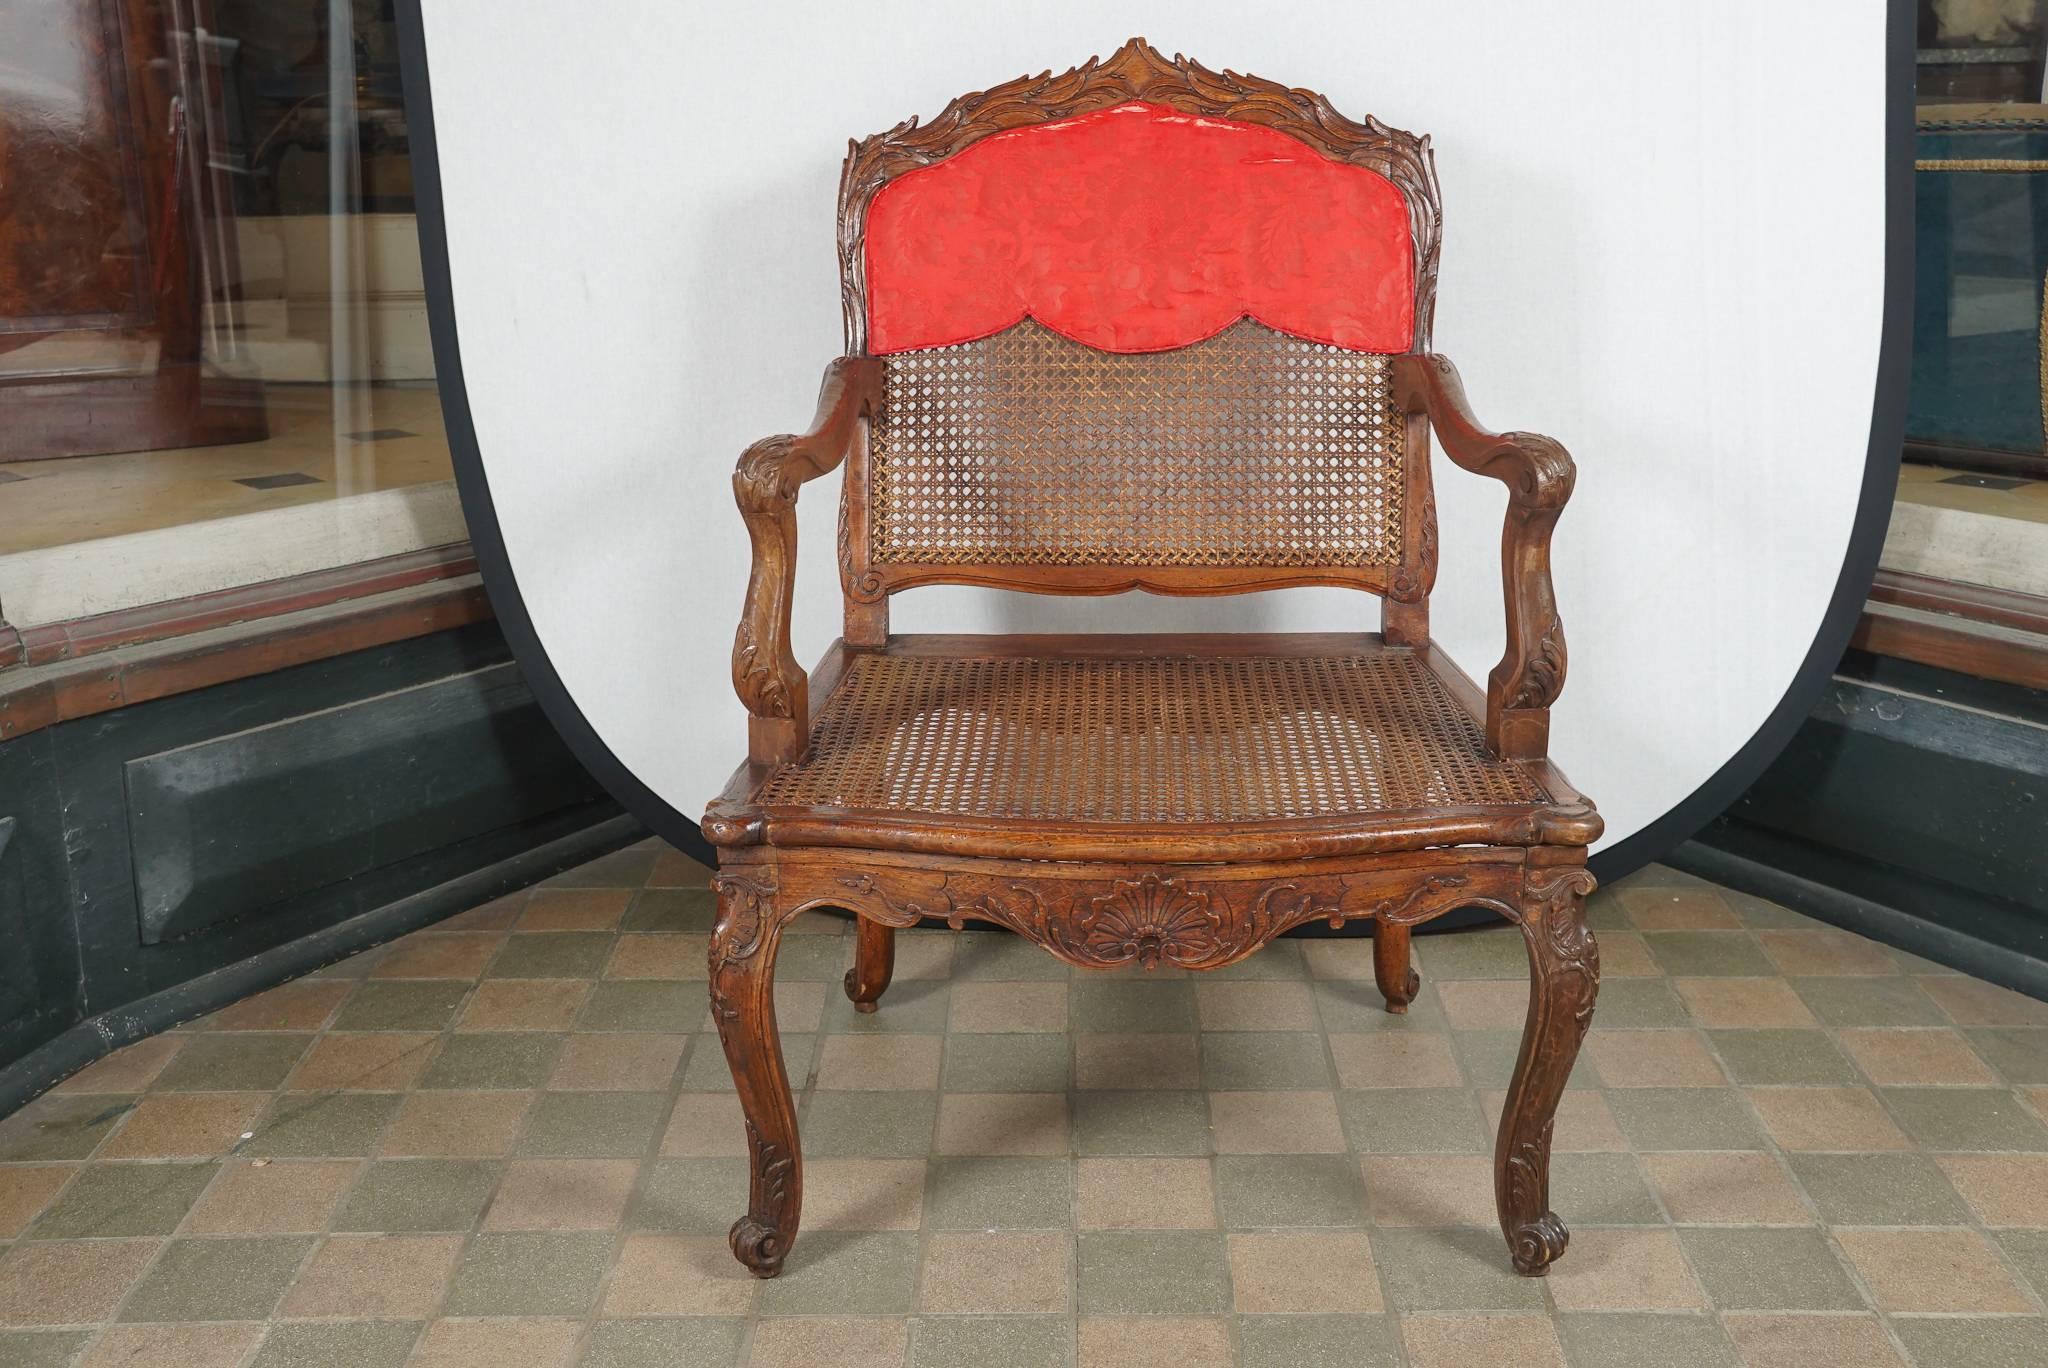 Ce beau fauteuil à la reine ou fauteuil ouvert à dossier droit est sculpté dans du bois de hêtre et fini pour un effet léger et aéré dans un siège et un dossier cannelés. La chaise faisait partie de la maison de la ville de New York provenant de la